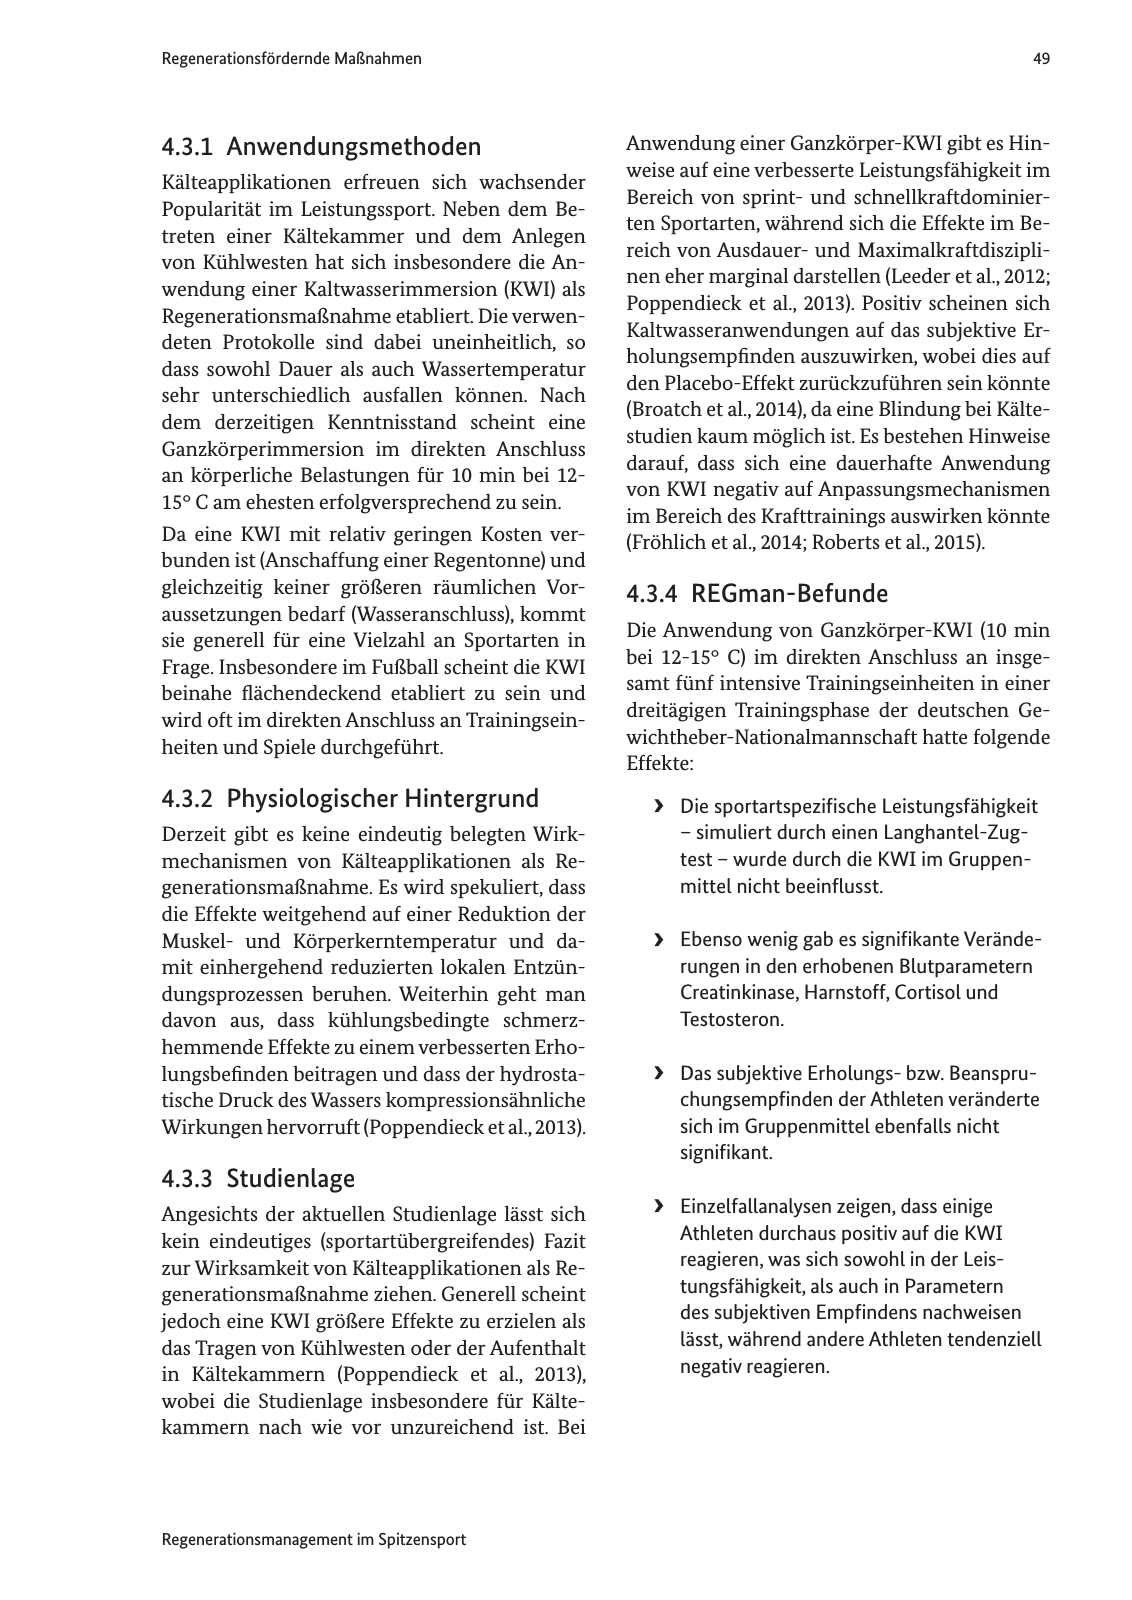 Vorschau Handreichung Regmann / Regenerationsmanagement im Spitzensport Seite 50